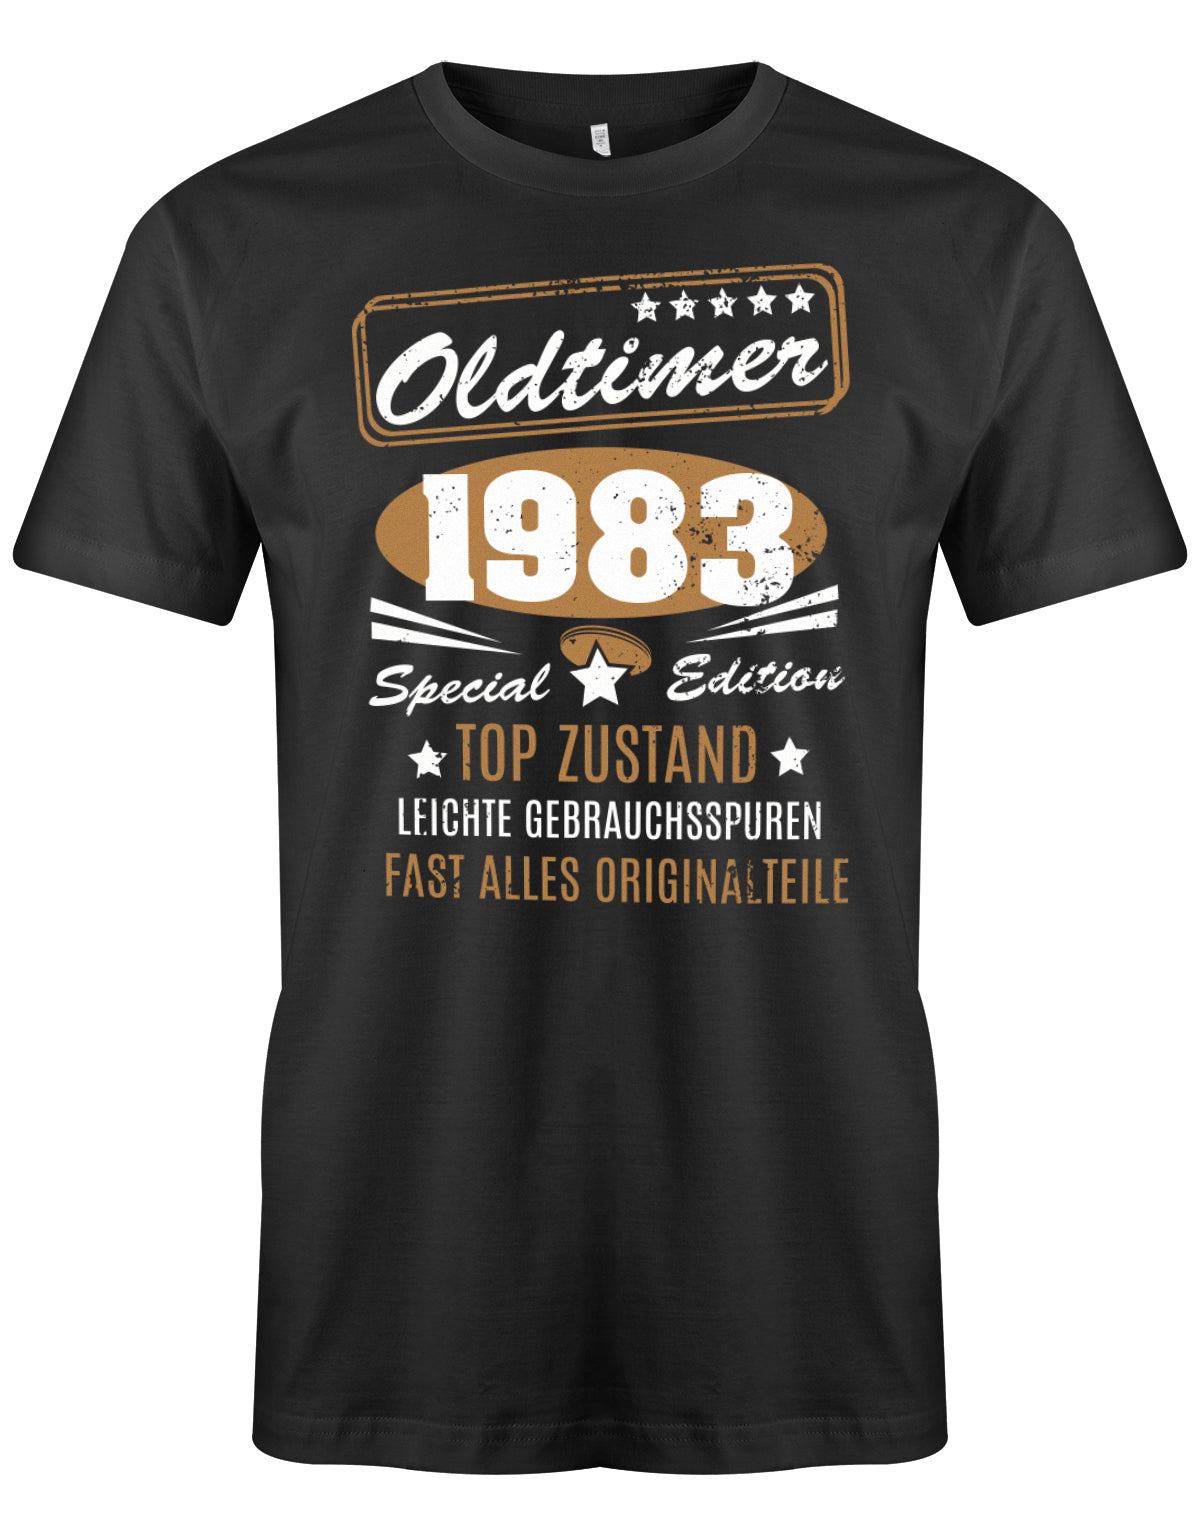 Oldtimer 1983 Special Edition Top Zustand - T-Shirt 40 Geburtstag Männer myShirtStore Schwarz